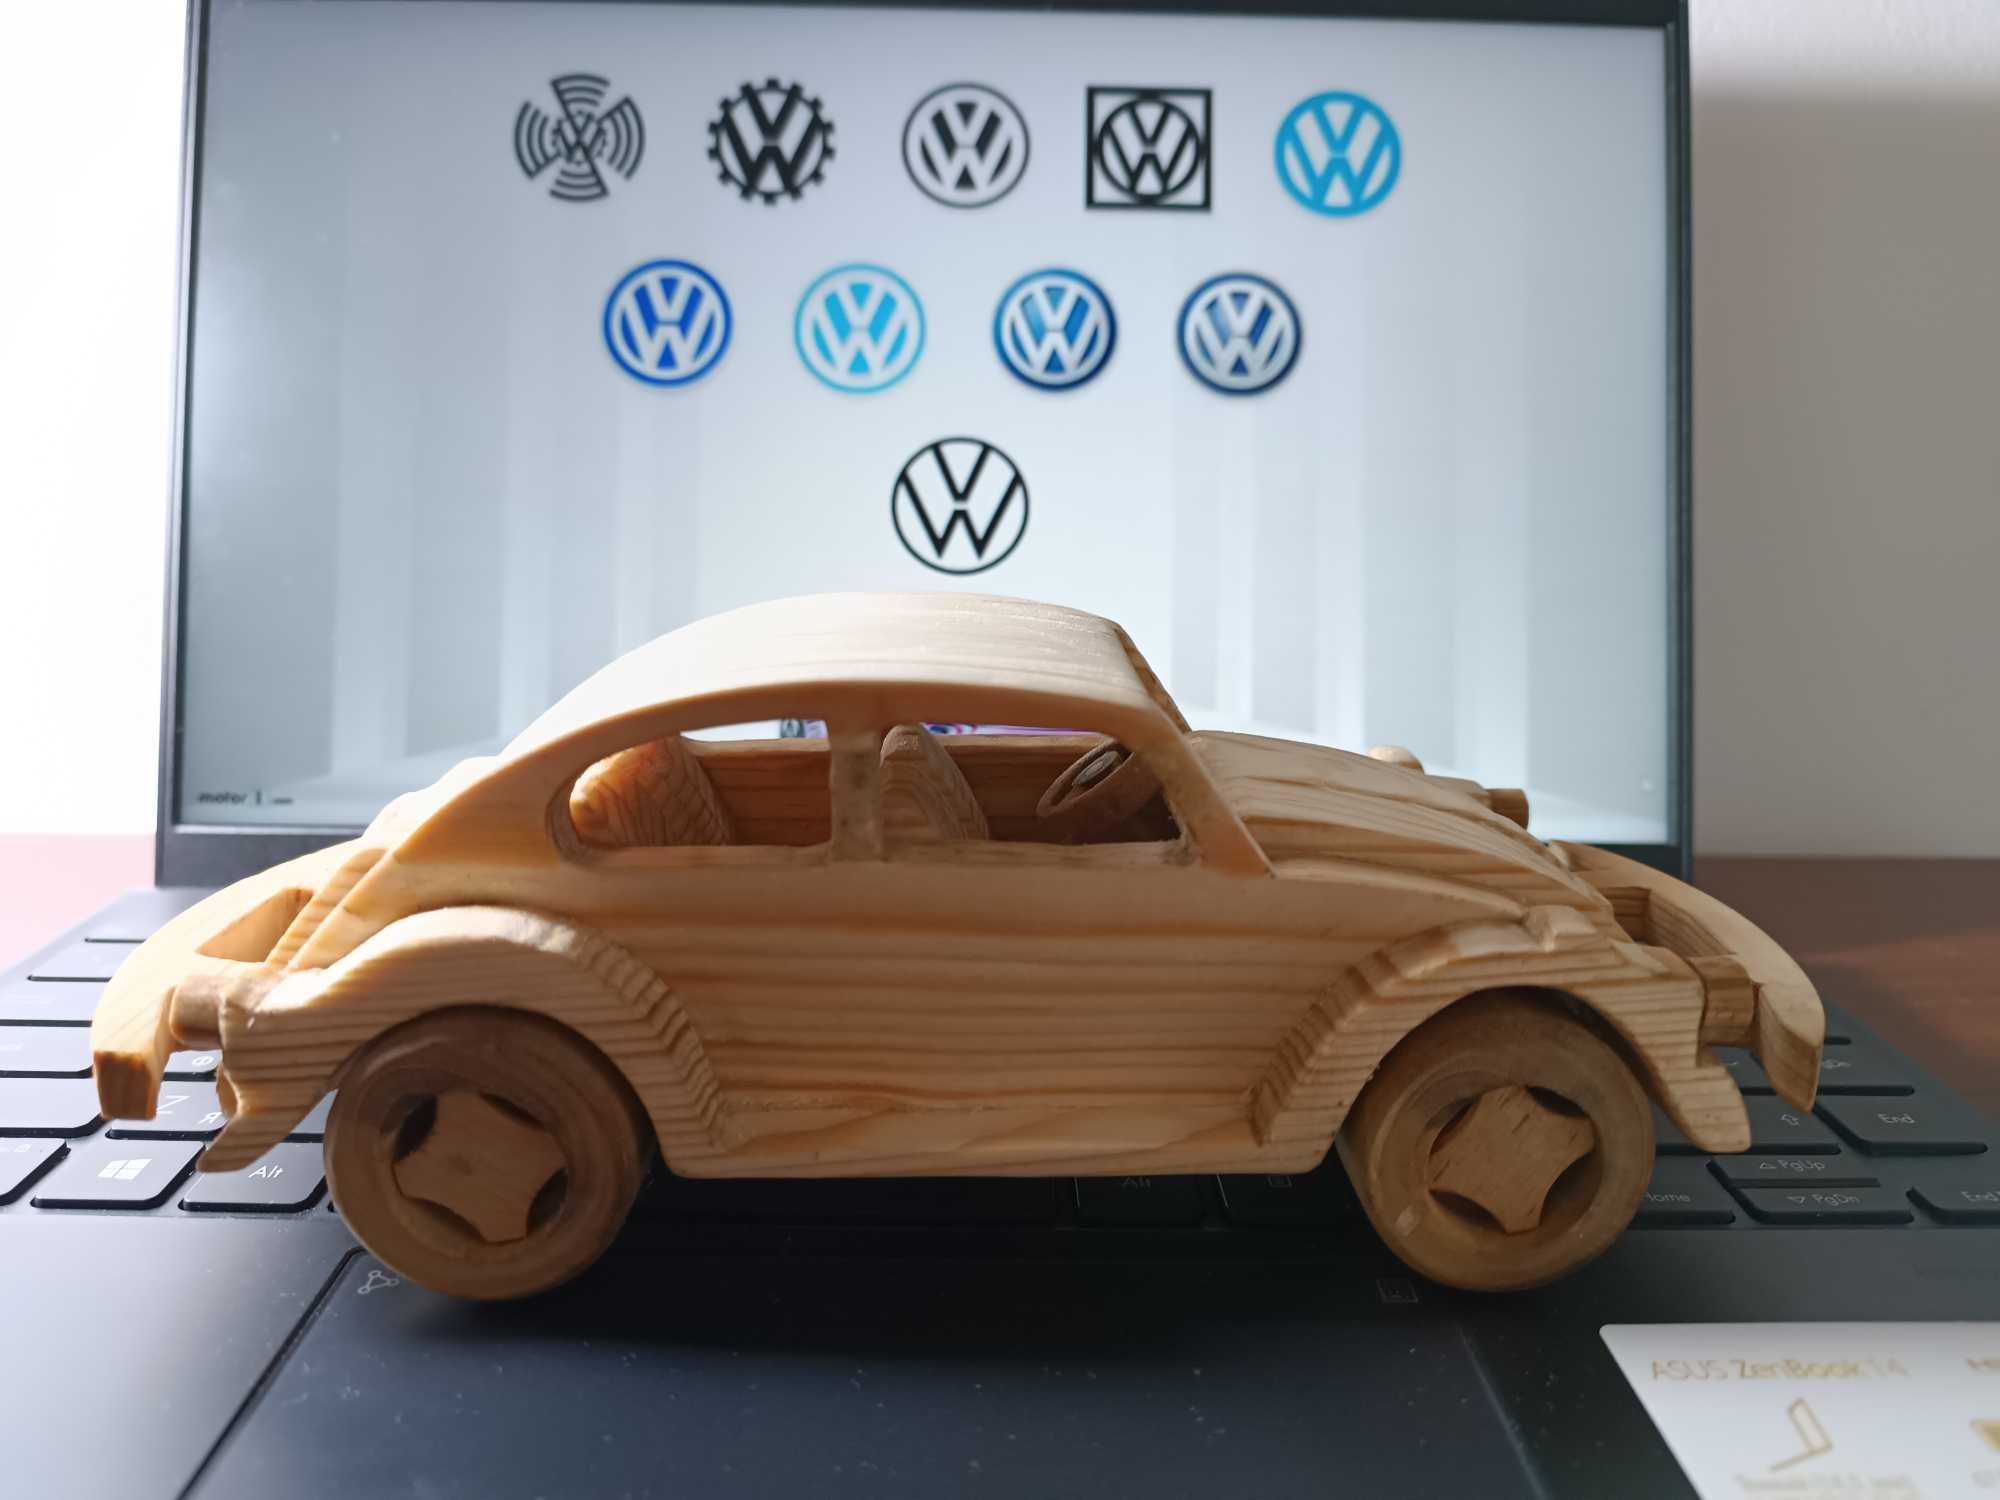 Maşinuţă VW eco din lemn (hand made)